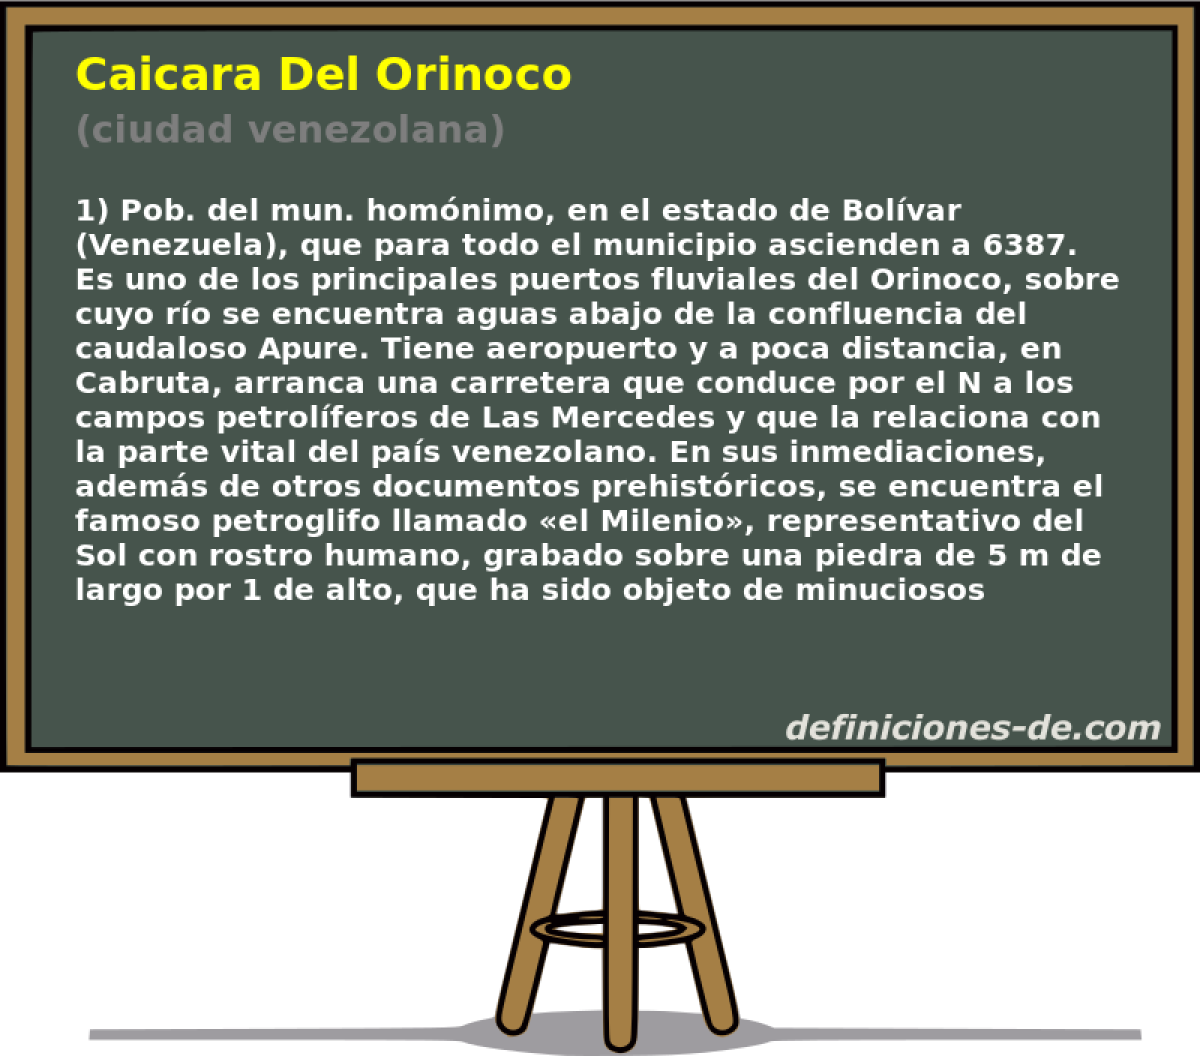 Caicara Del Orinoco (ciudad venezolana)